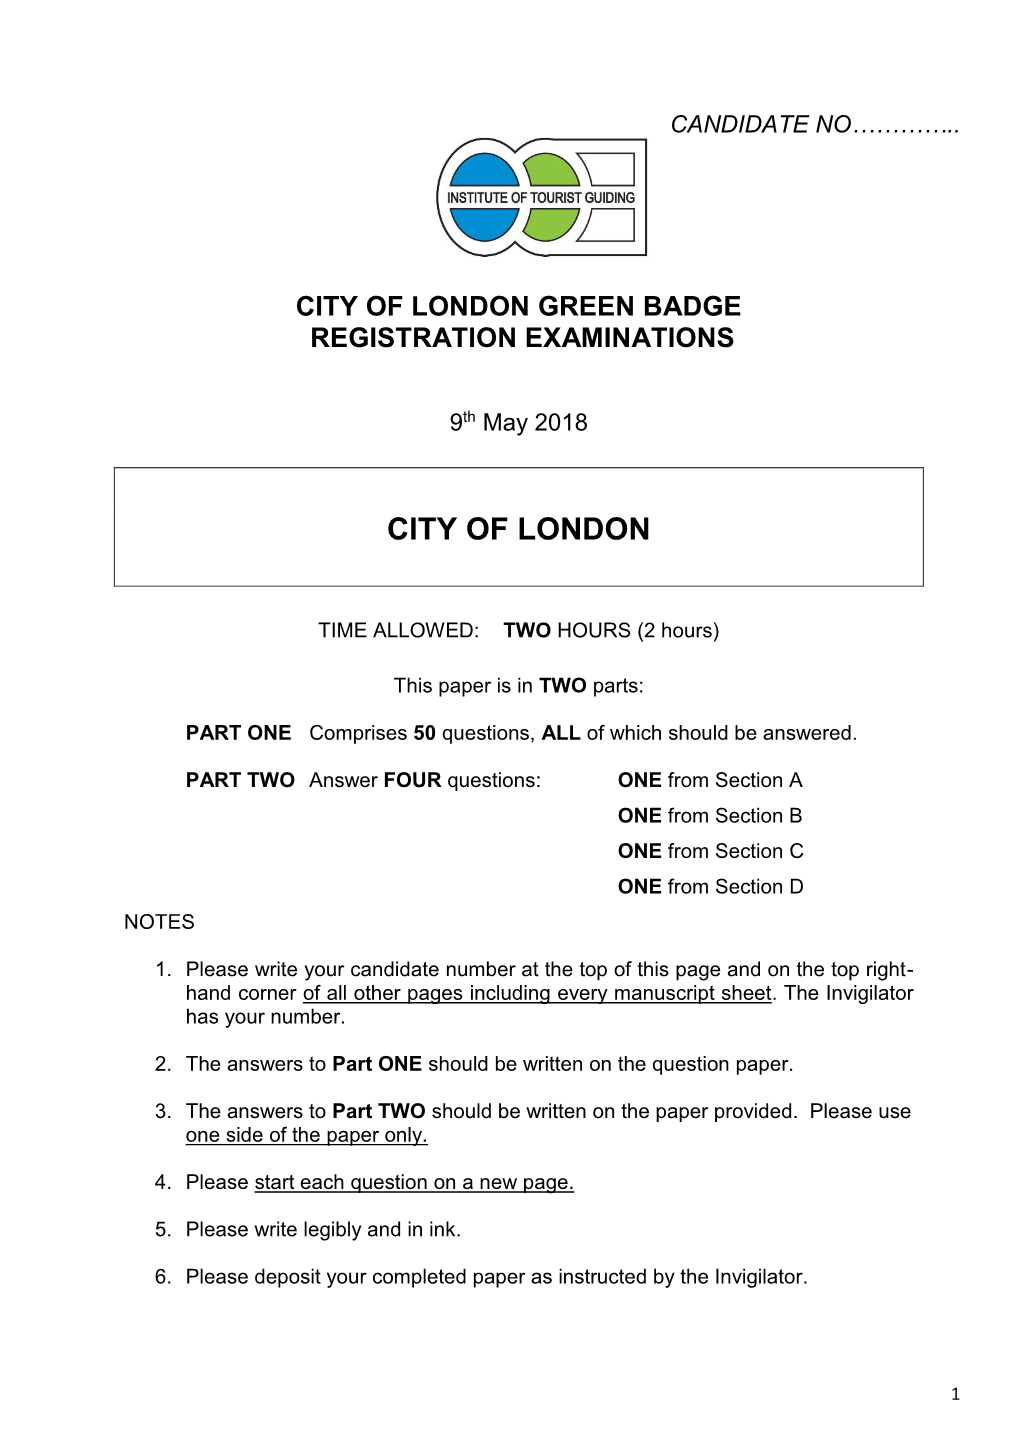 City of London GB Written Paper 2018